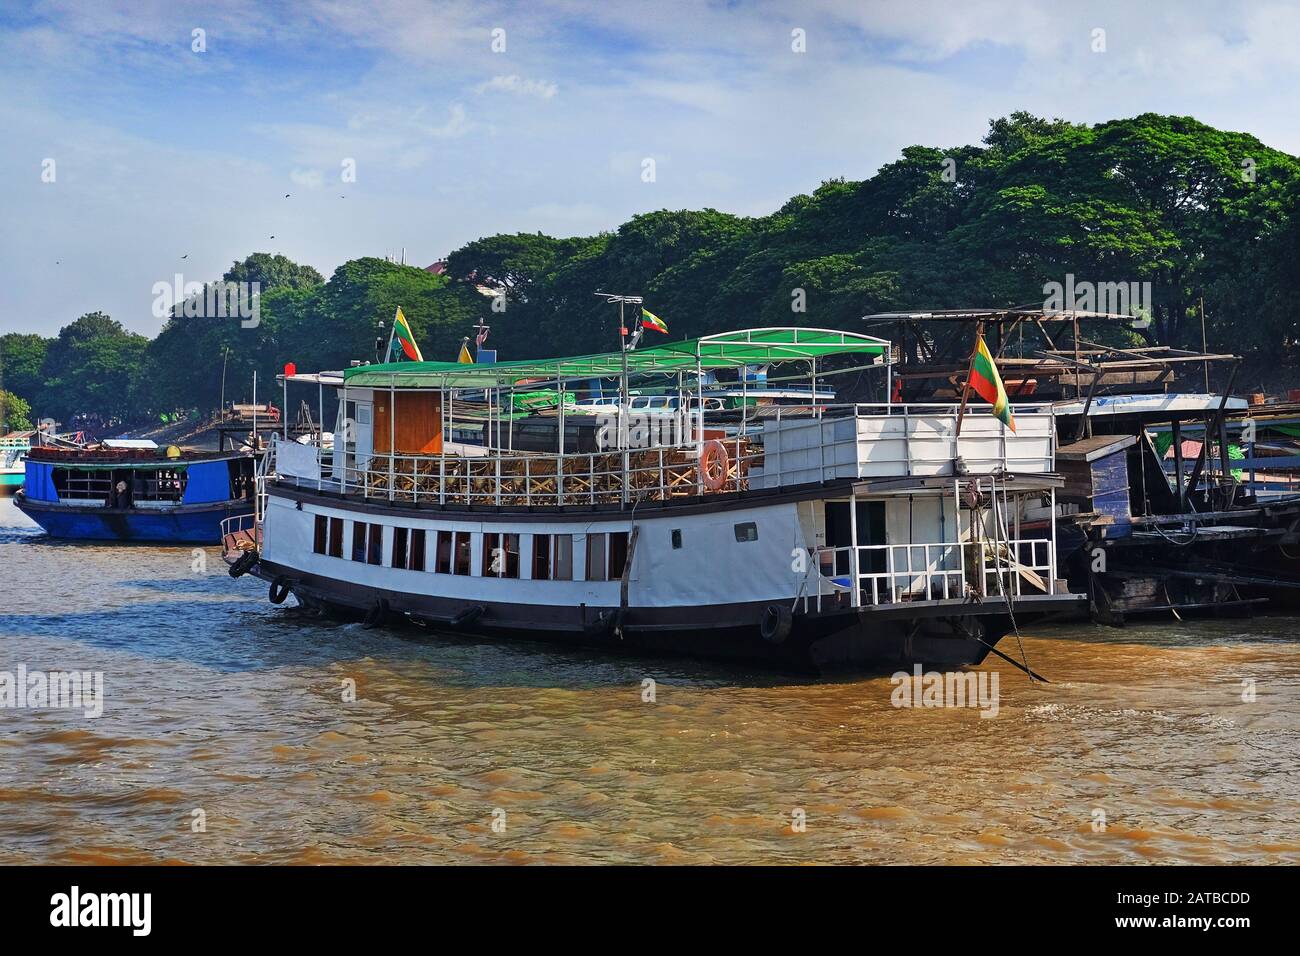 Traditionelle bunte birmanische Boote auf dem Fluss Irrawaddy, im Hafen von Mandalay, Myanmar, gegen grüne Vegetation und einen klaren blauen Himmel, der von bedeckt ist Stockfoto